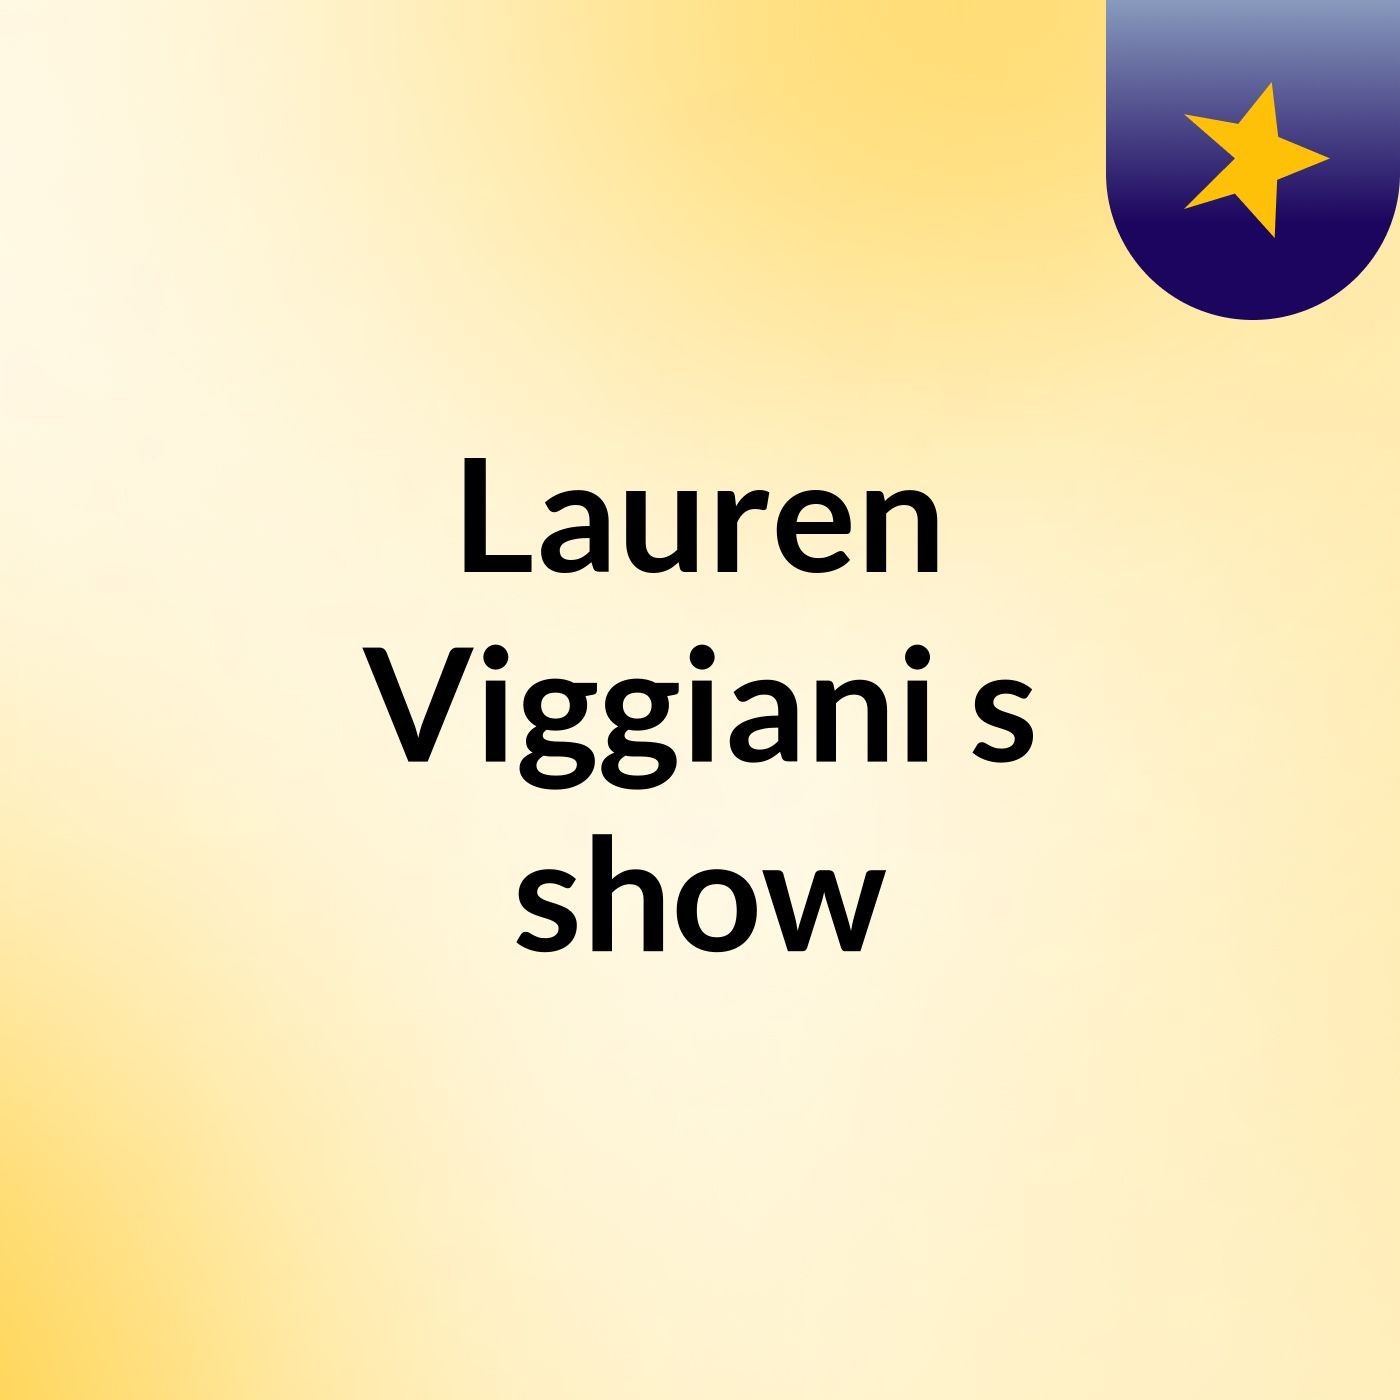 Lauren Viggiani's show